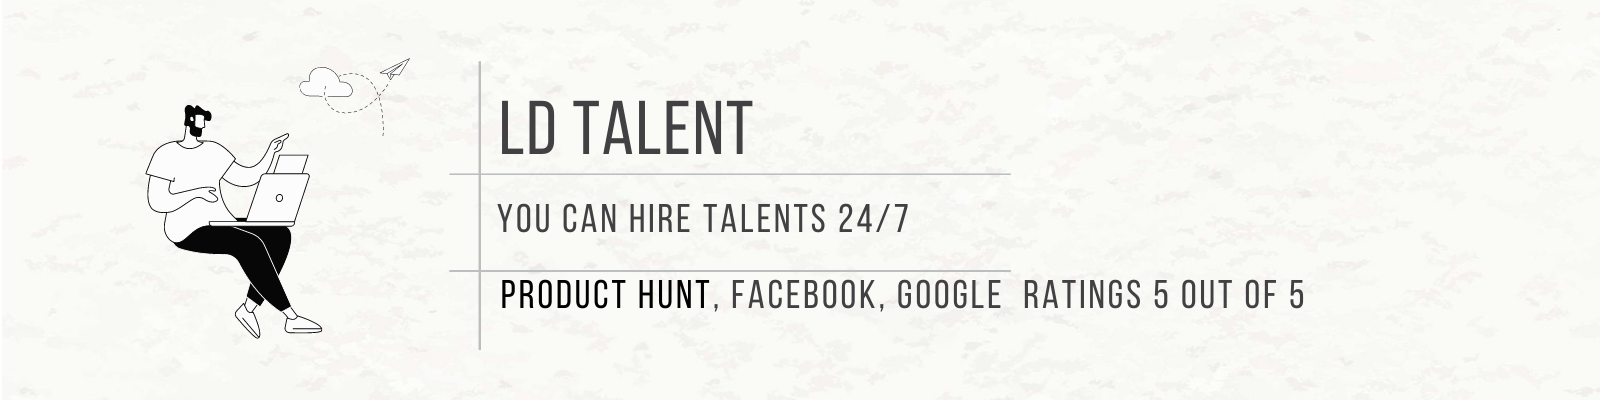 ld talent banner 